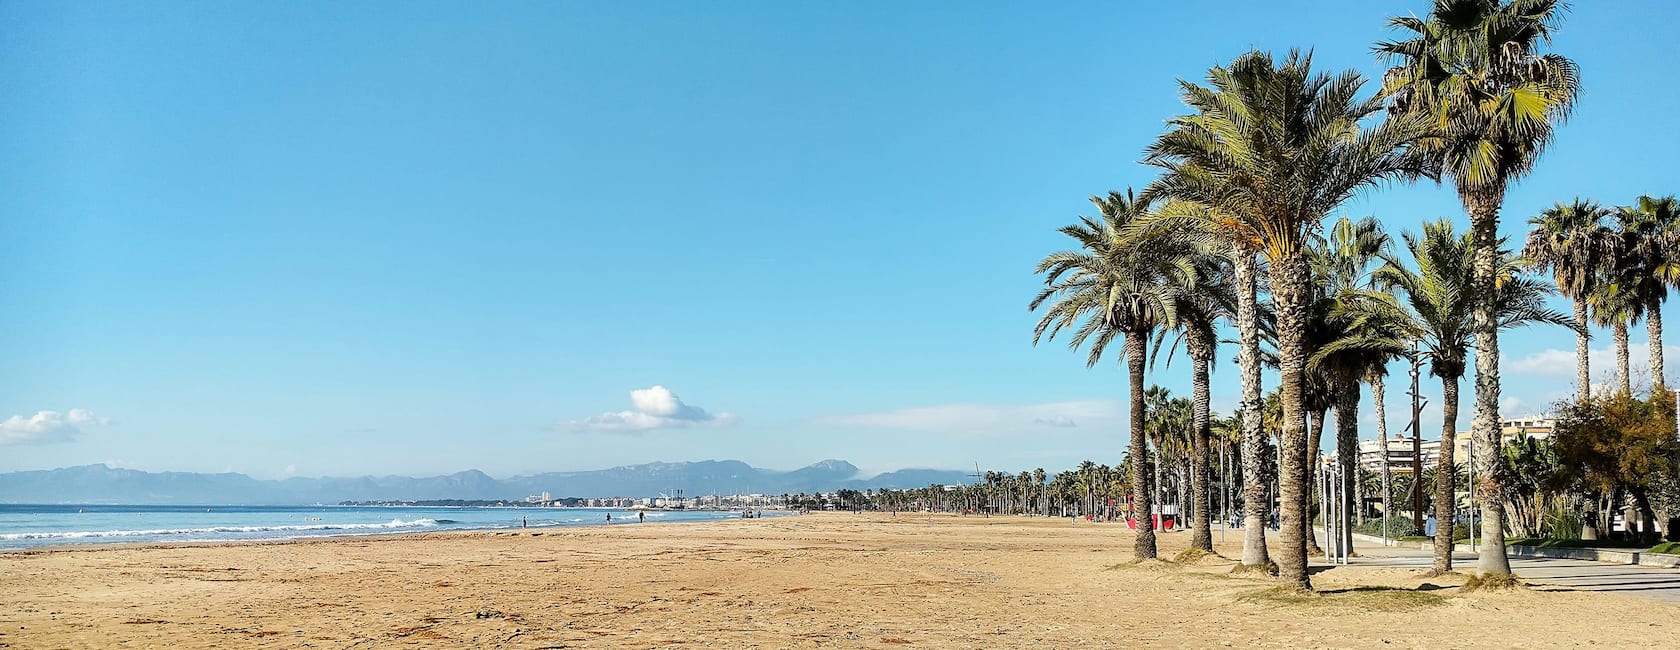 Tarragona में छुट्टियाँ बिताने के लिए किराए की जगहें